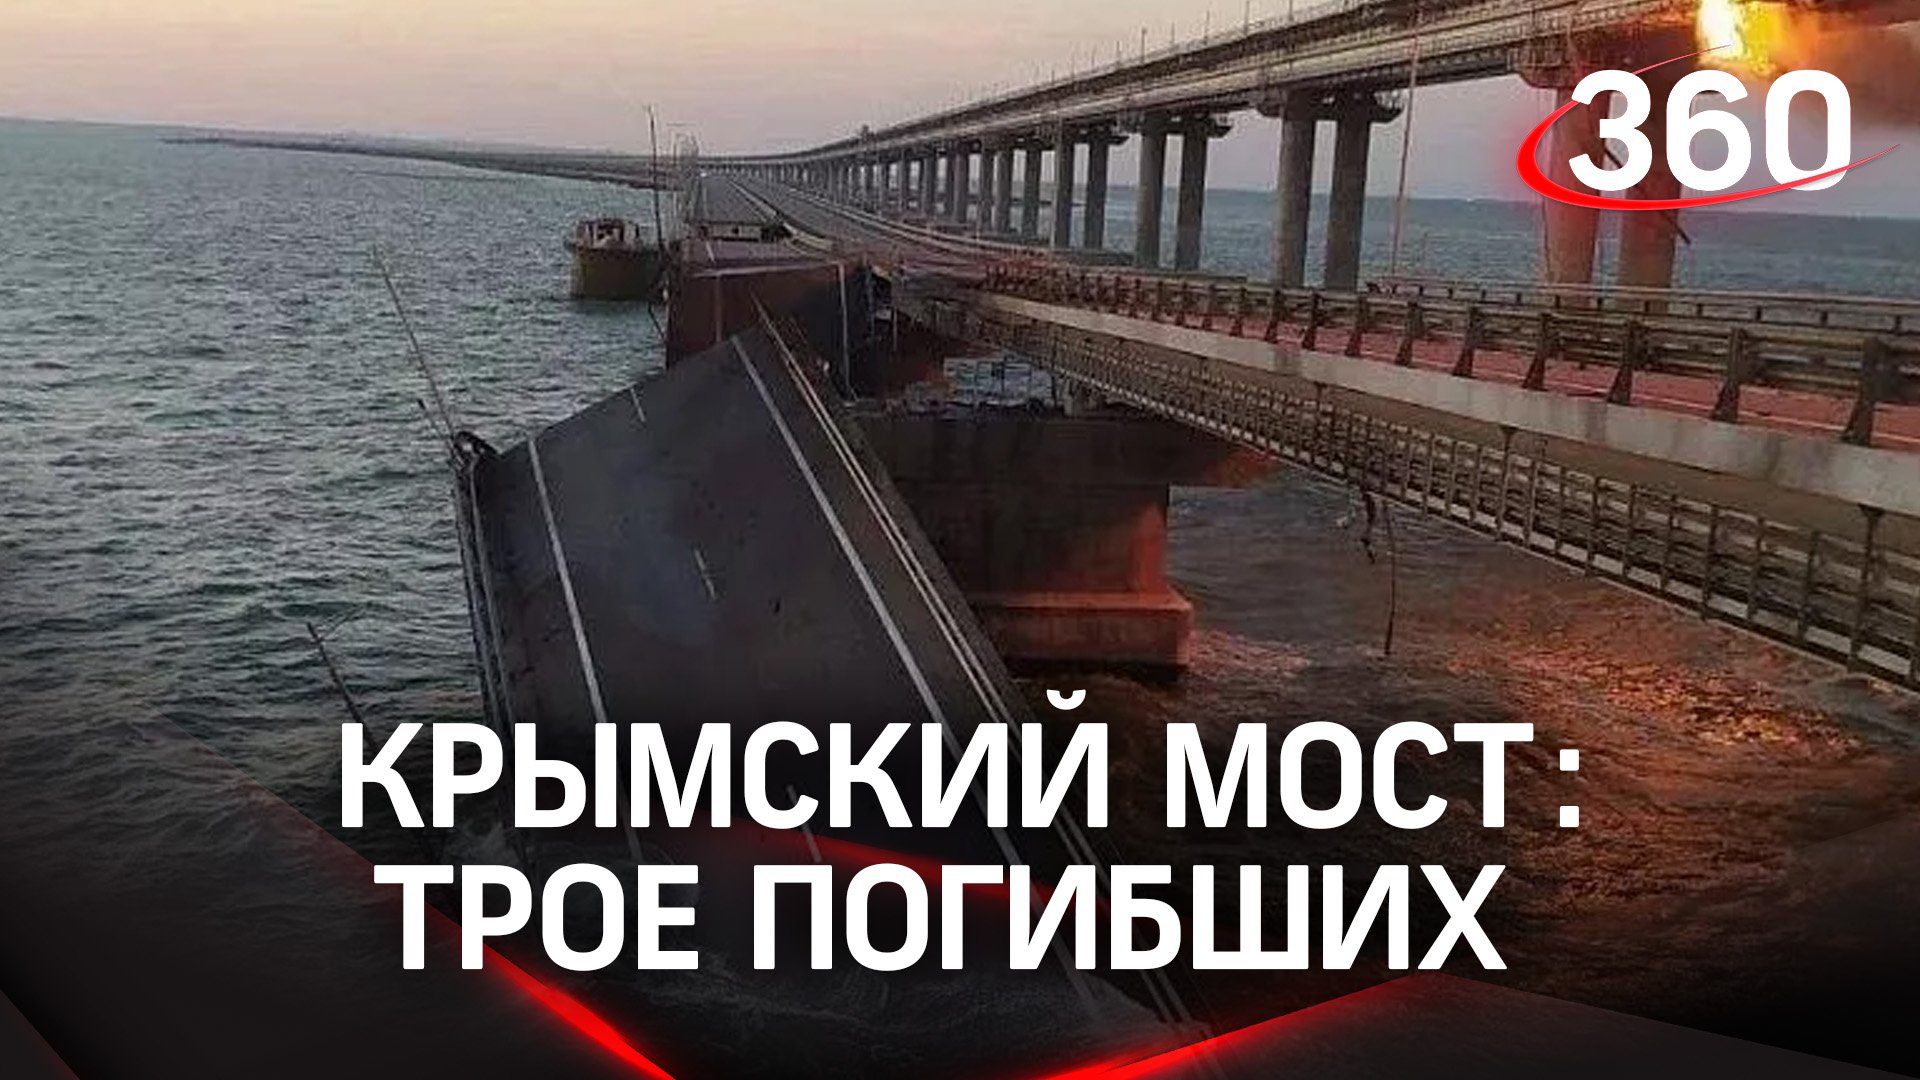 Трое погибших из-за ЧП на Крымском мосту. Детали, последствия и реакция на происшествие